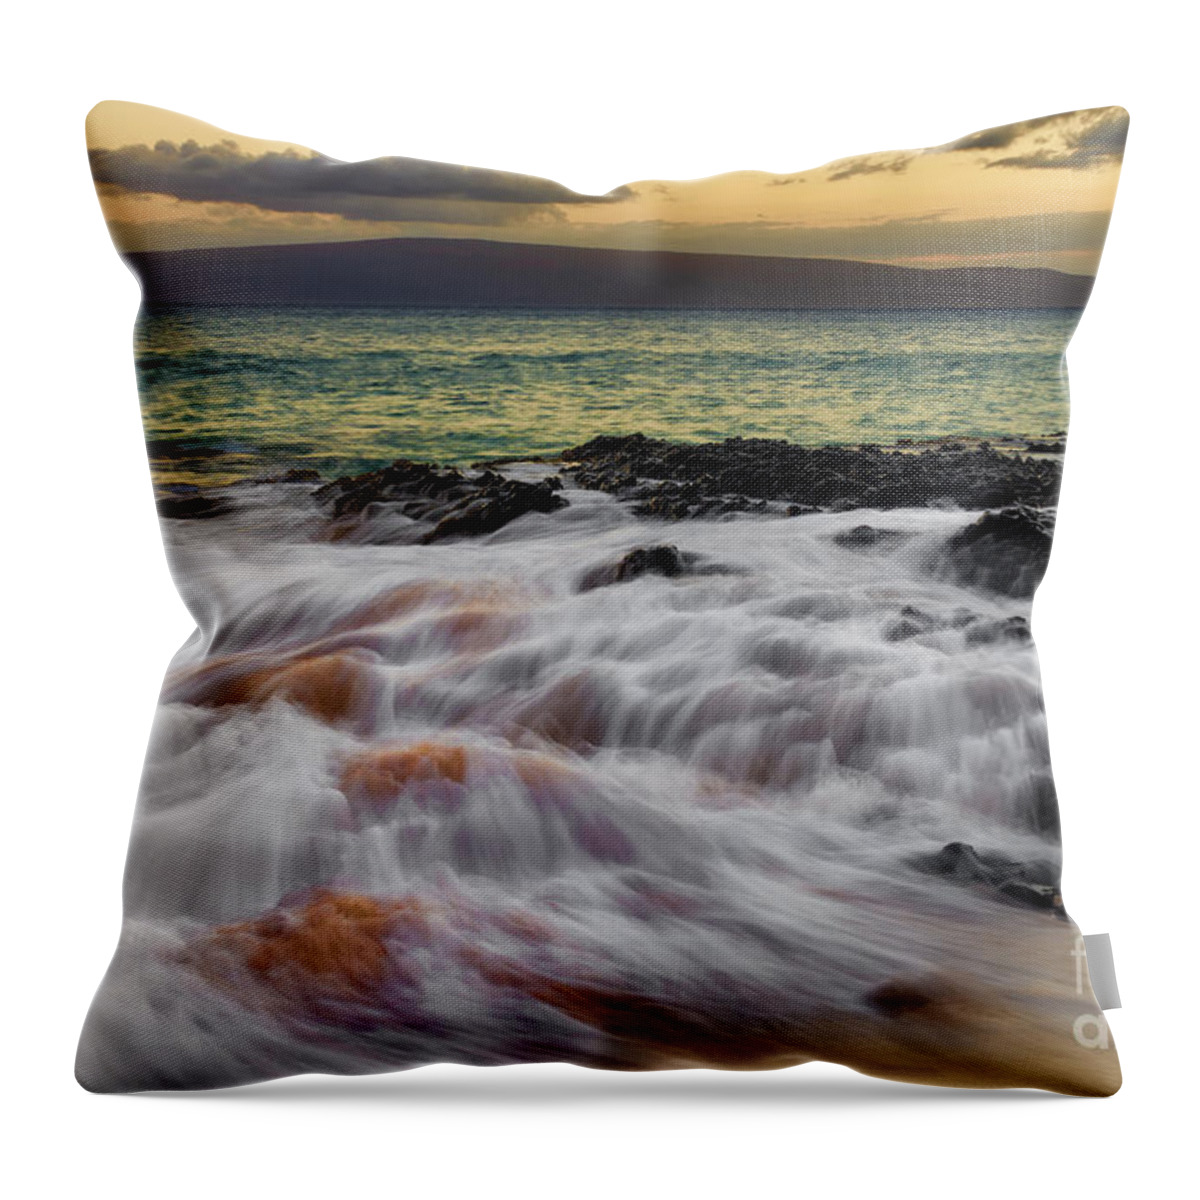 Running Throw Pillow featuring the photograph Running Wave at Keawakapu Beach by Eddie Yerkish